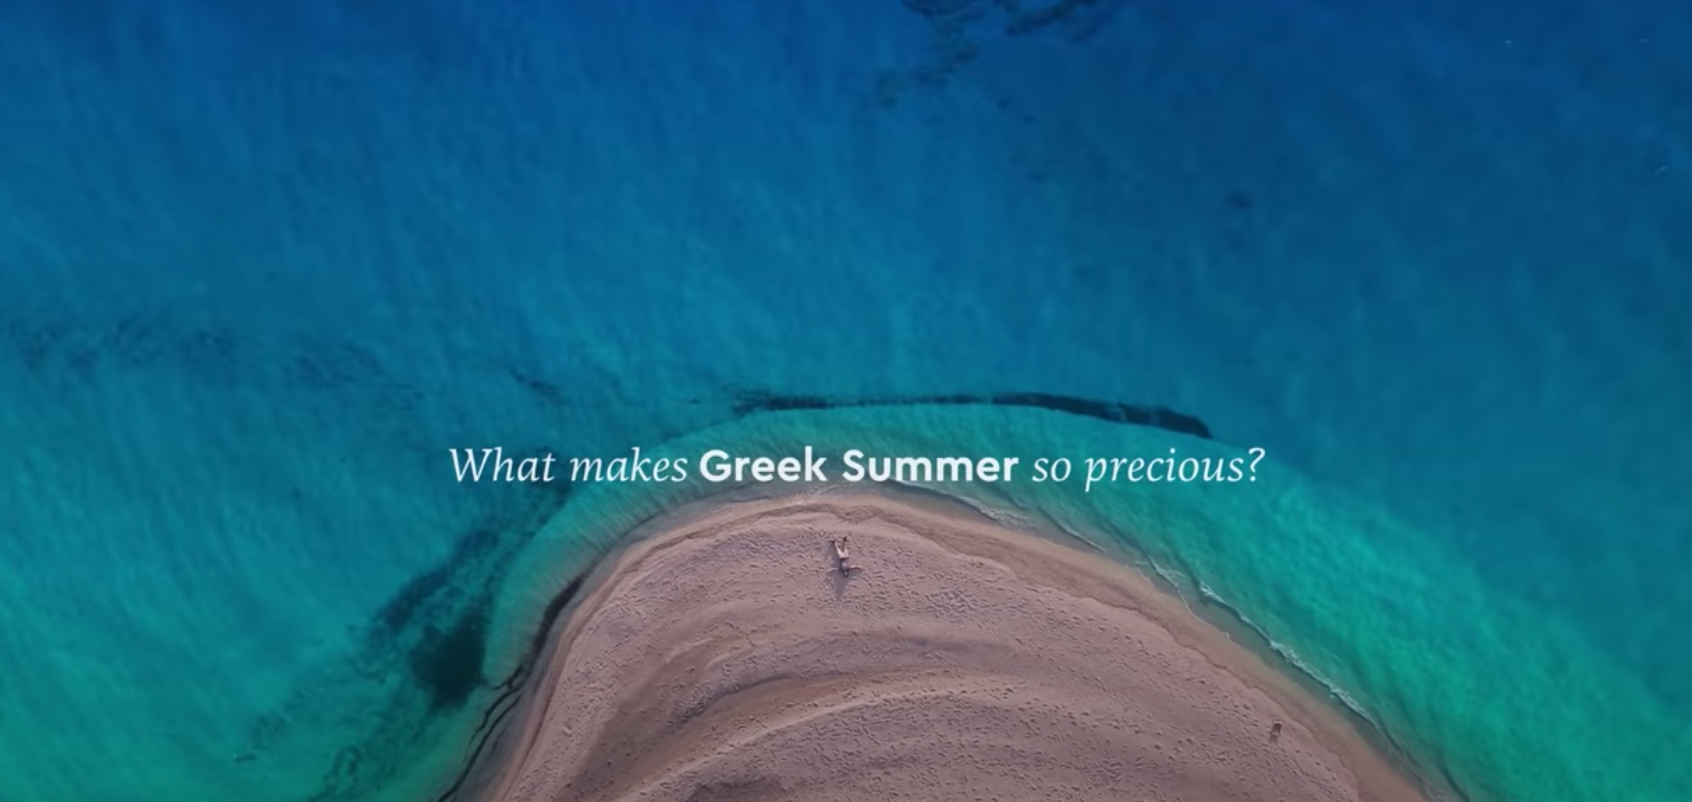 Σκέψεις για το “Greek Summer is a State of Mind” - Parallaxi Magazine